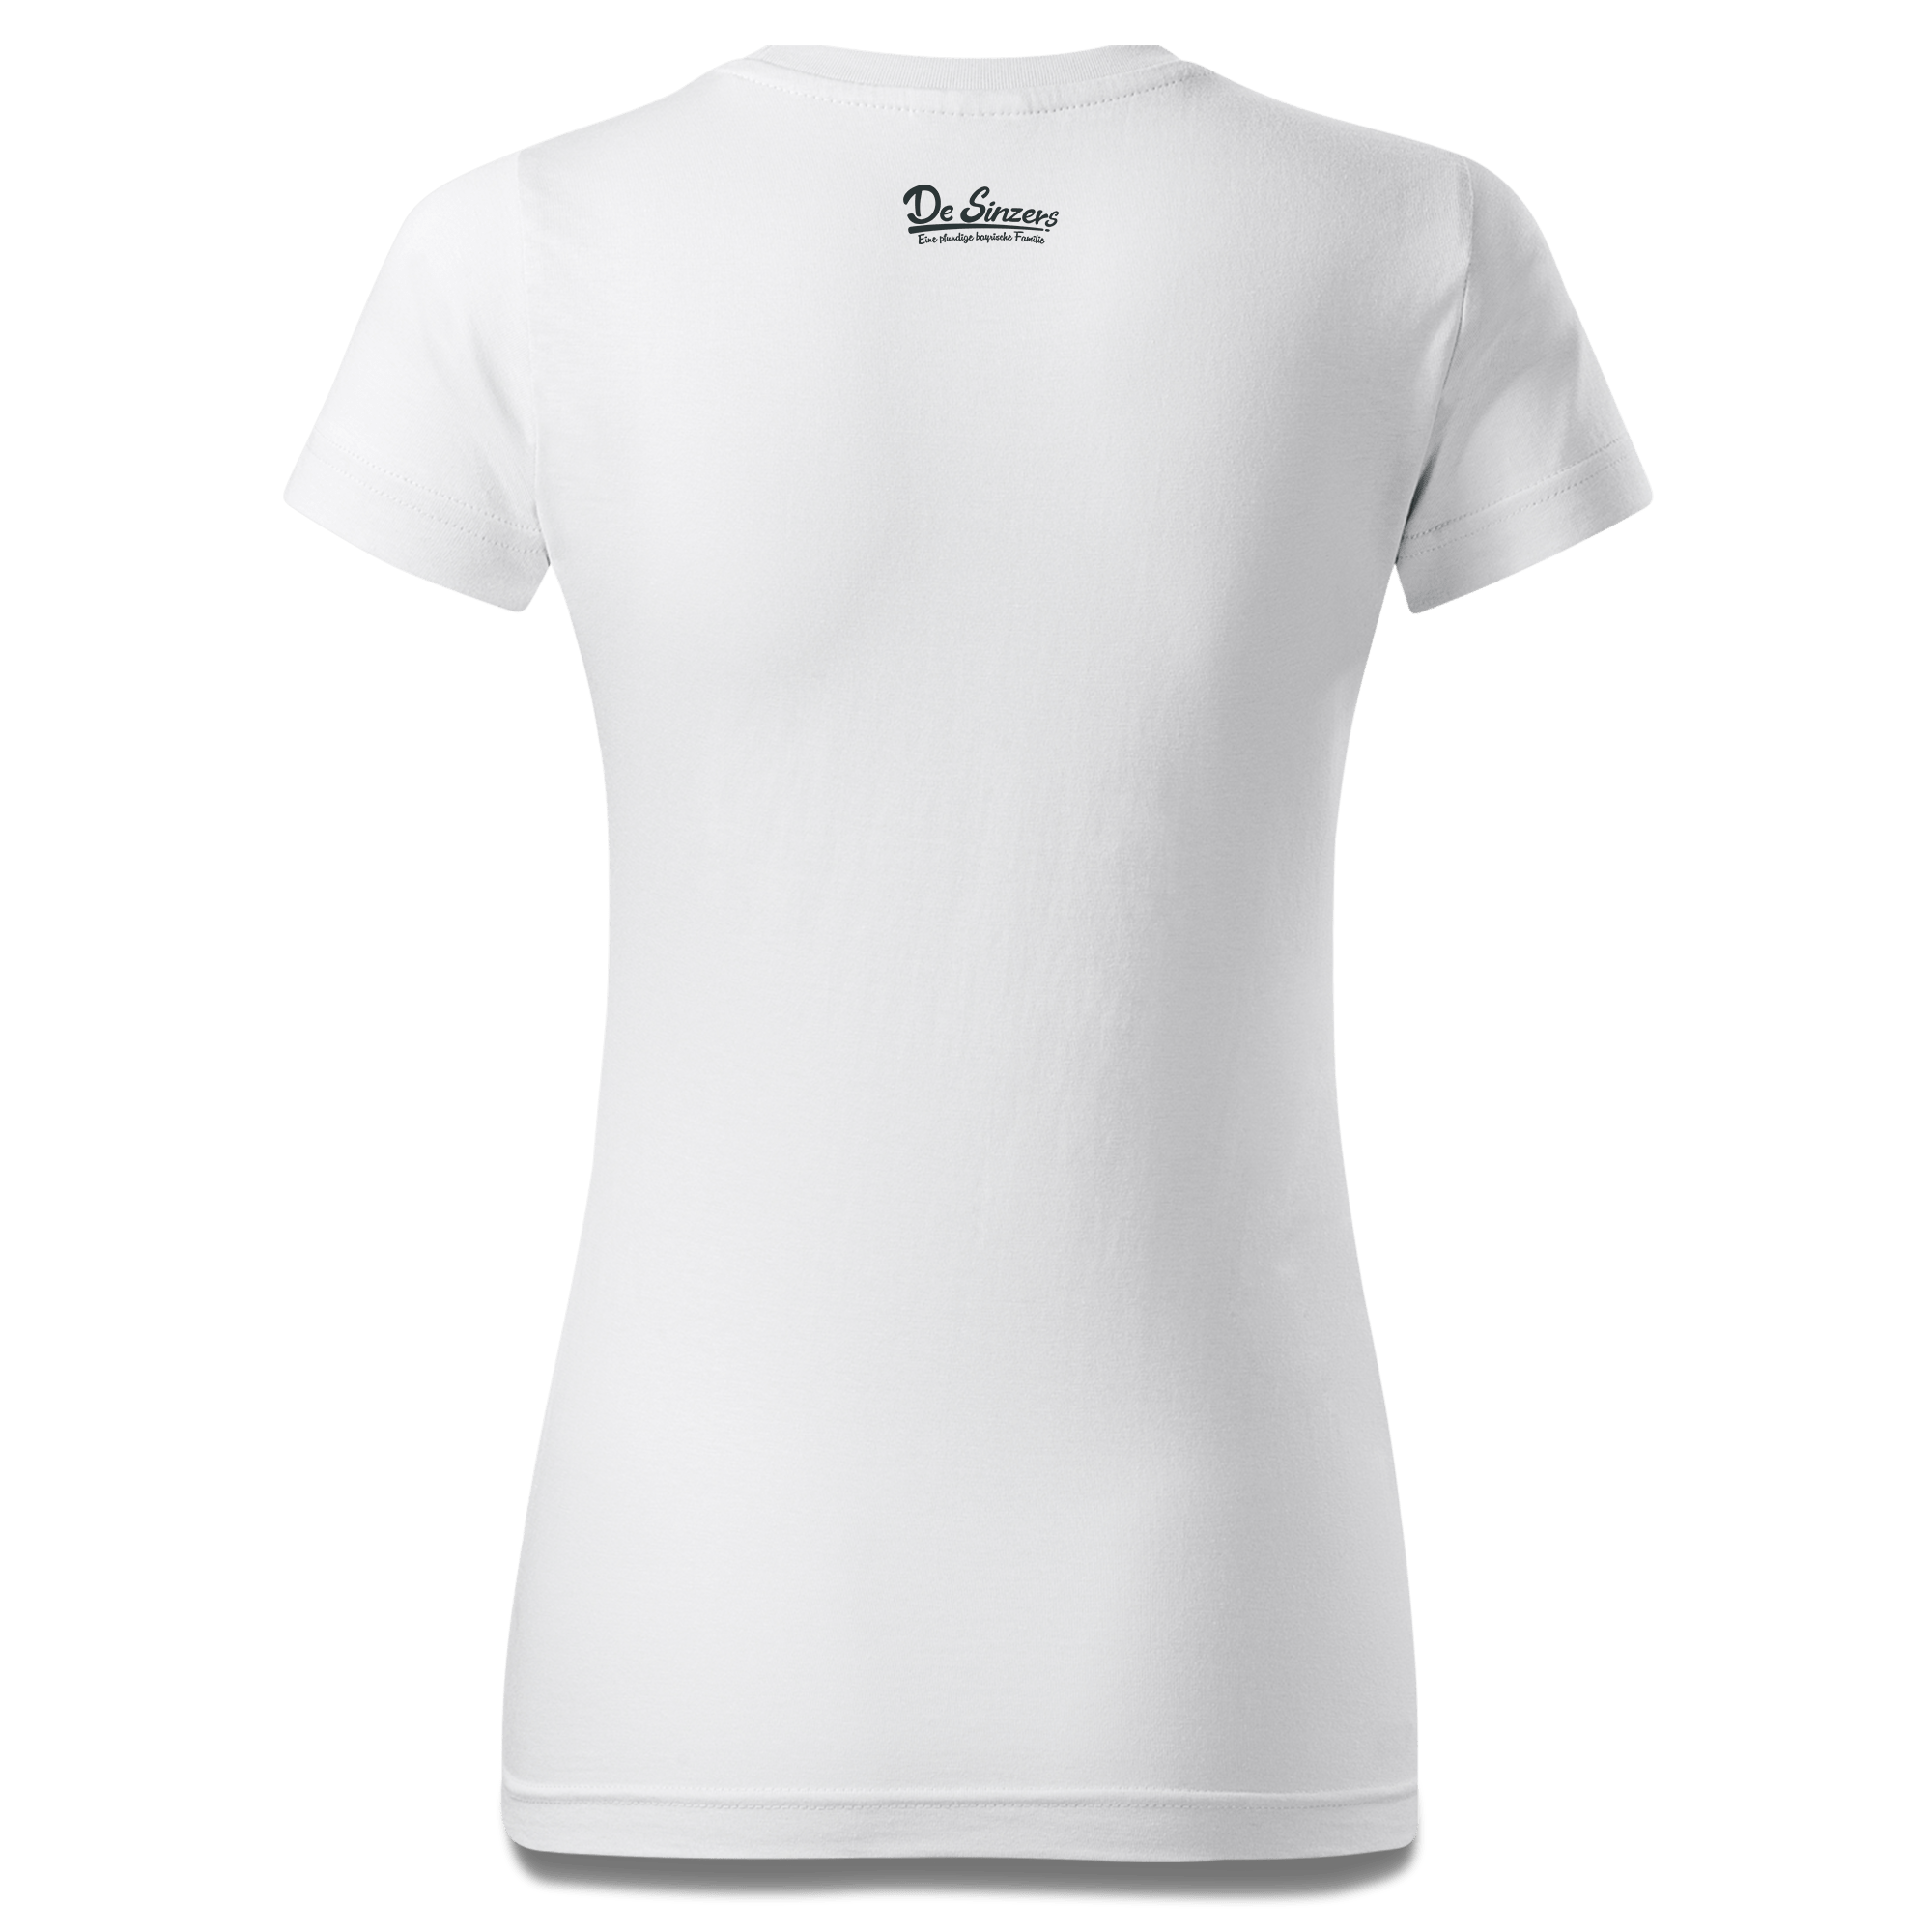 Die Oid Sinzerin Goasslschnoizer T Shirt Damen Weiss Gehering Back